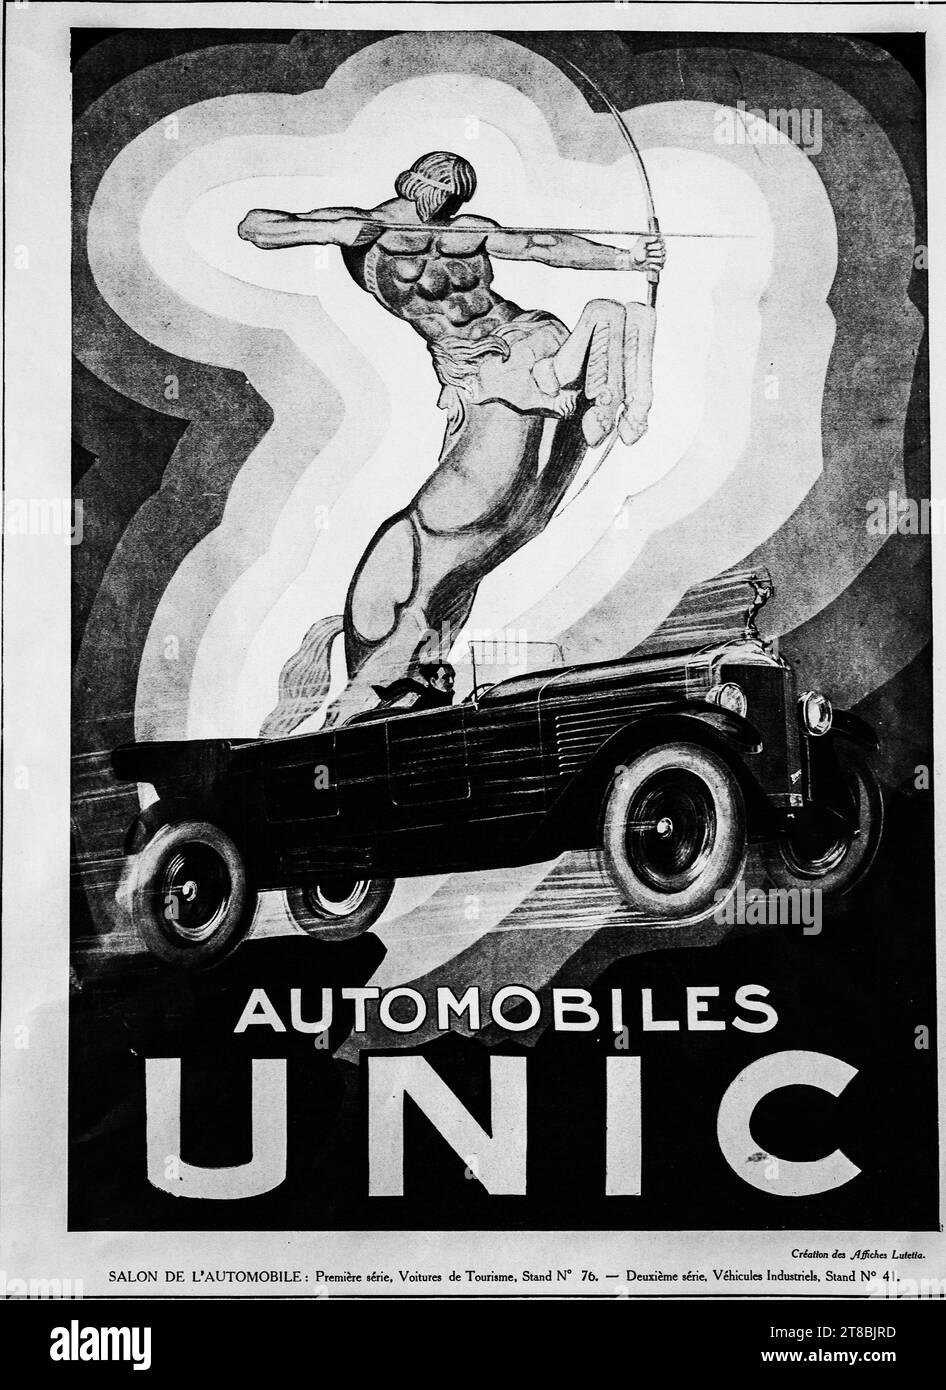 Une publicité de style Art Déco vintage 1926 pour une voiture Unic. Les voitures UNIC ont été produites en France entre 1905 et 1938. La publicité montre une puissante figure mythique archer. Banque D'Images